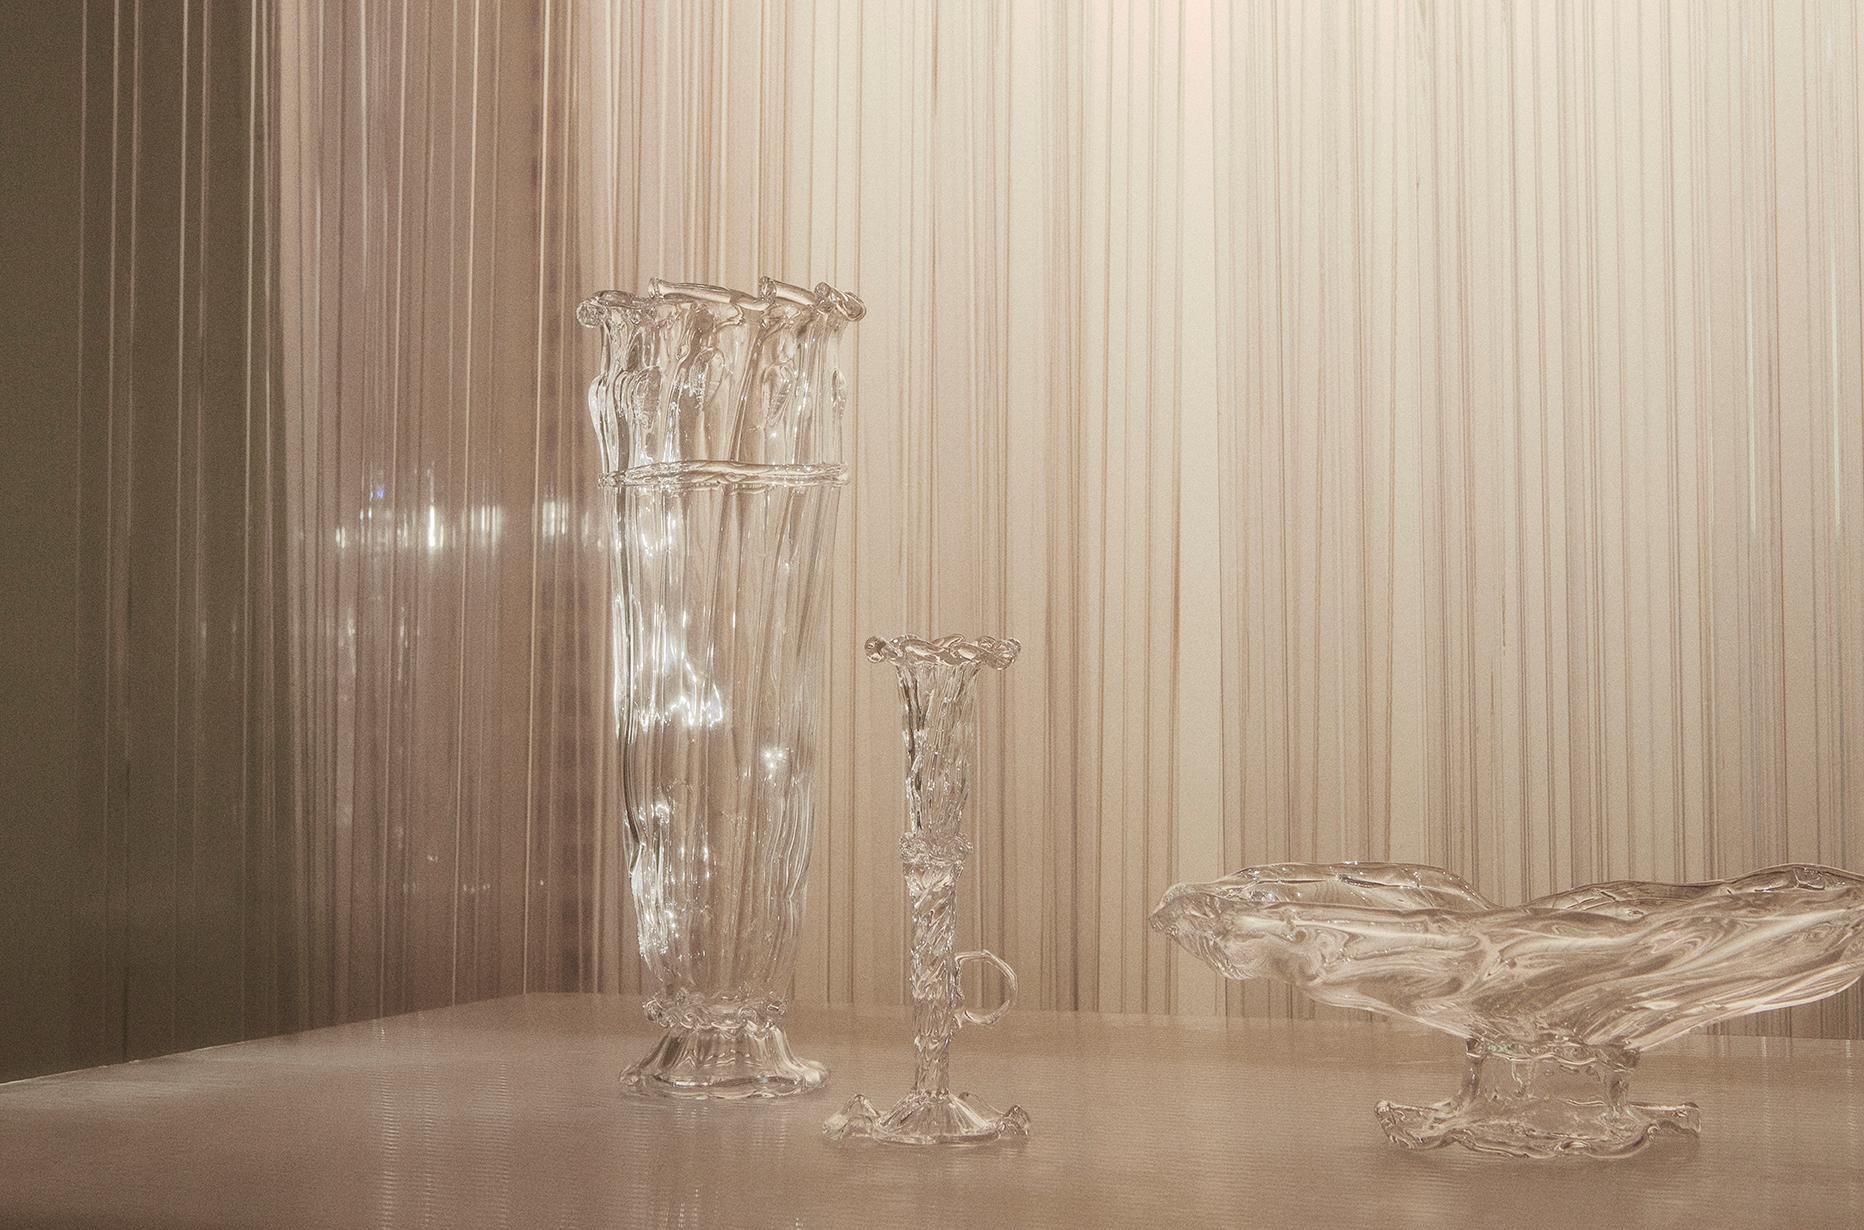 Alle Glaswaren werden von Alexander Kirkeby in Dänemark mundgeblasen.
Jedes Stück ist daher ein Unikat und unterscheidet sich leicht in Größe und Dekoration.

Alexander Kirkeby ist Glasbläser und Designer und arbeitet im Bereich MATERIAL und